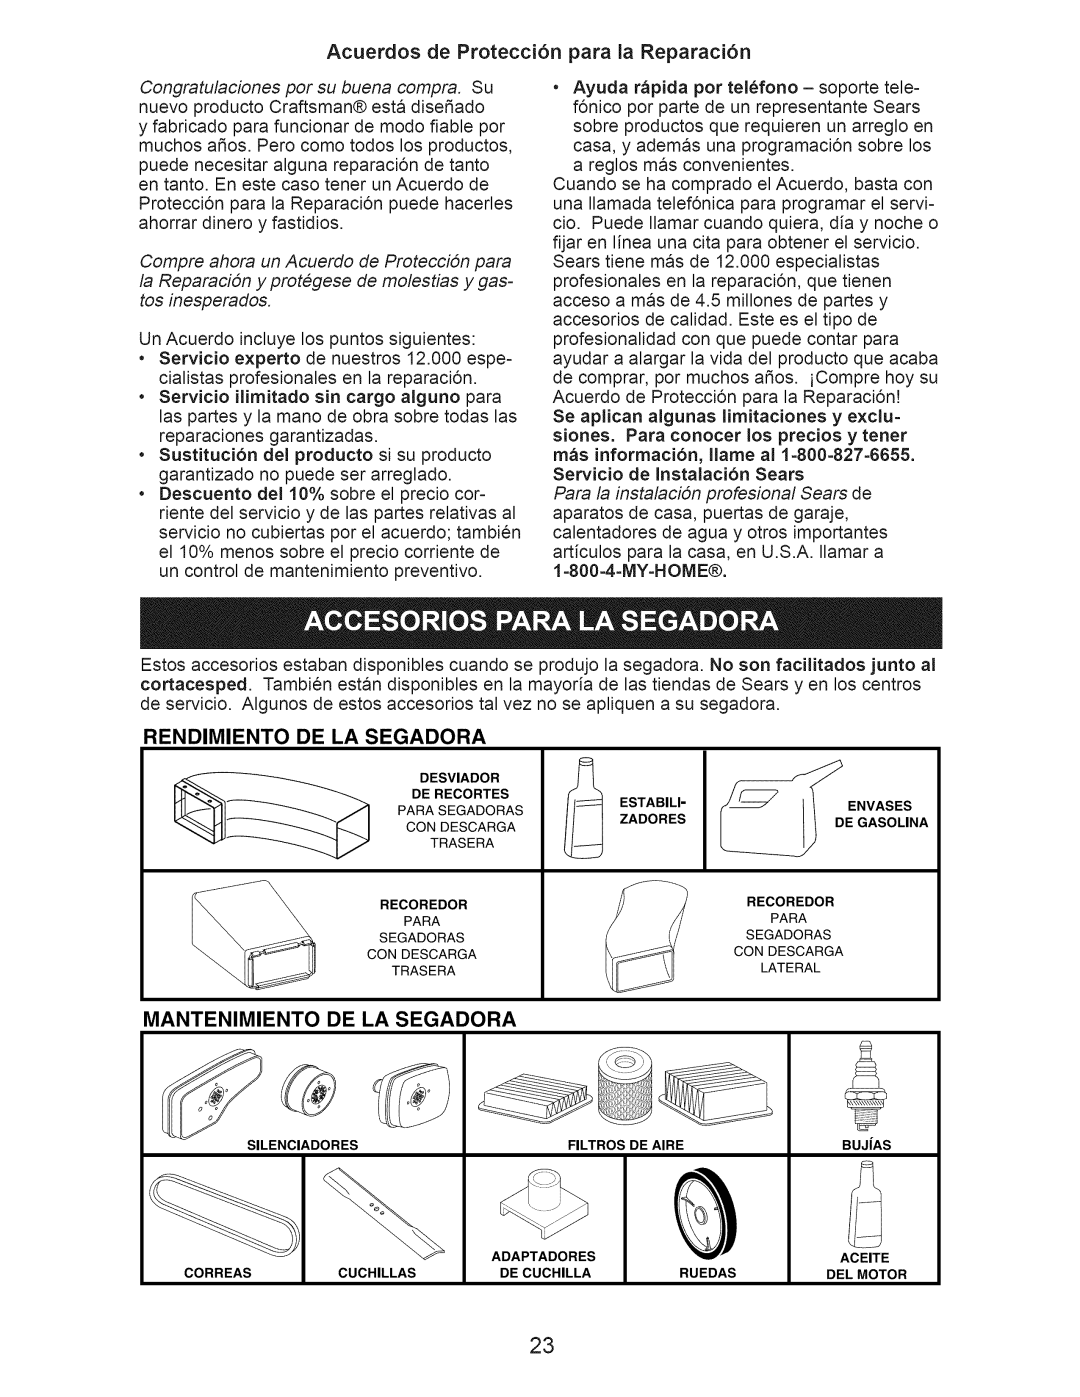 Craftsman 917.376540 manual Acuerdos de Protecci6n para la Reparaci6n, Rendimiento, De La Segadora, Mantenimiento 